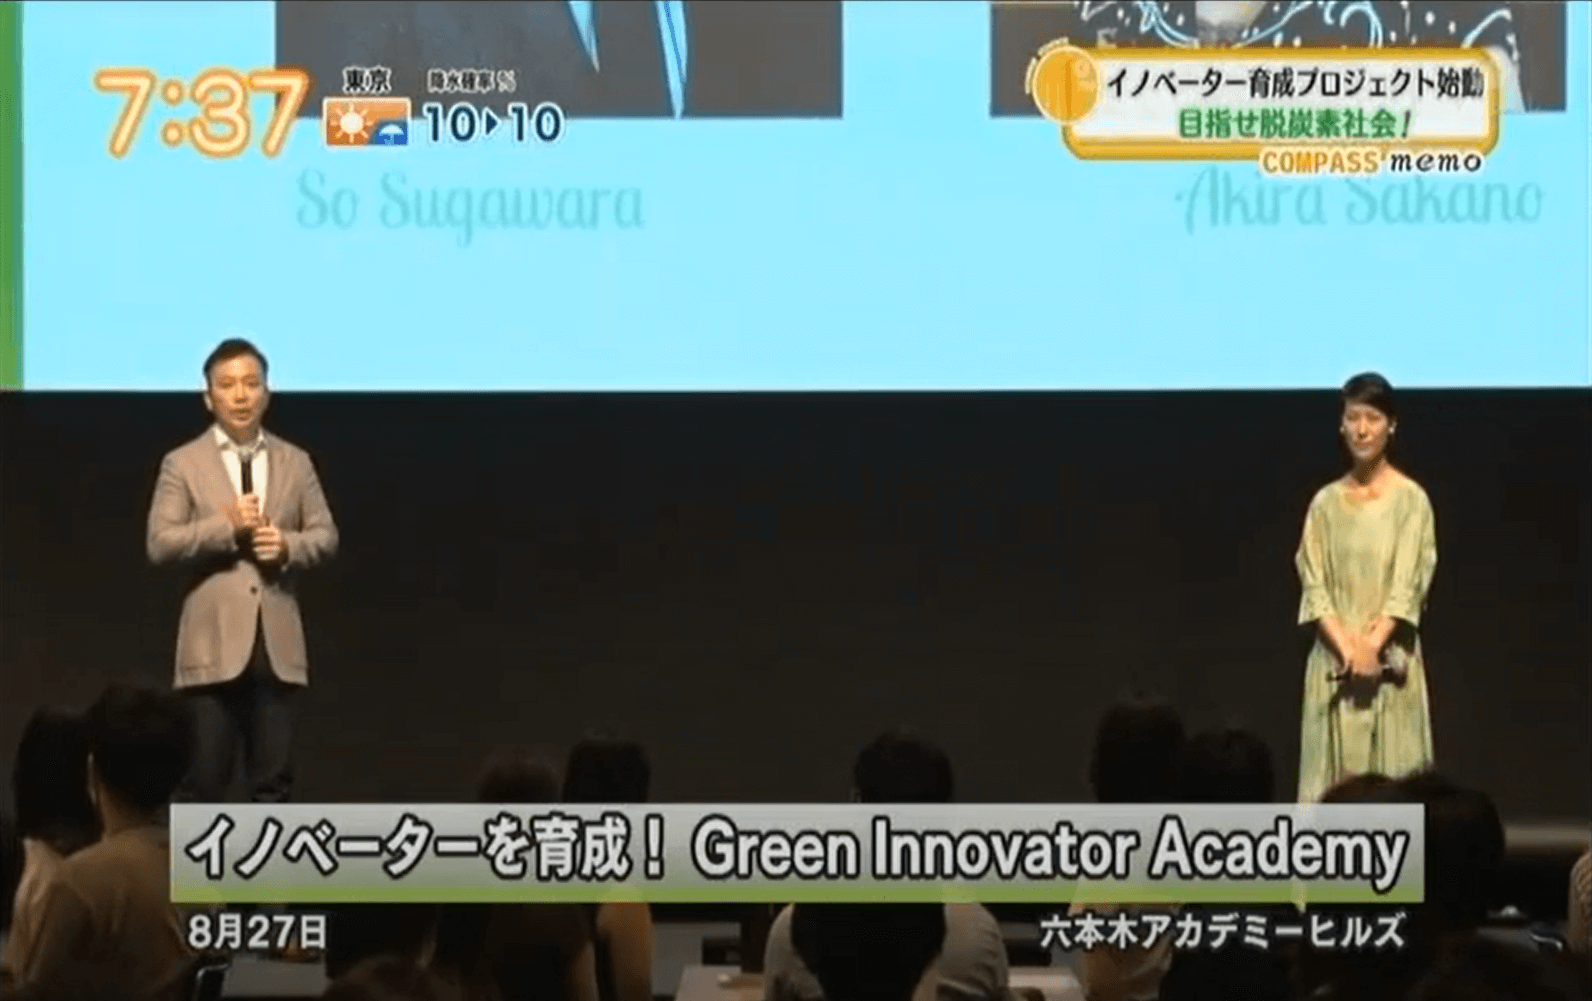 チバテレビ/テレビ神奈川/テレビ埼玉3局「モーニングこんぱす」にて第二期Green Innovator Academyについて放送されました